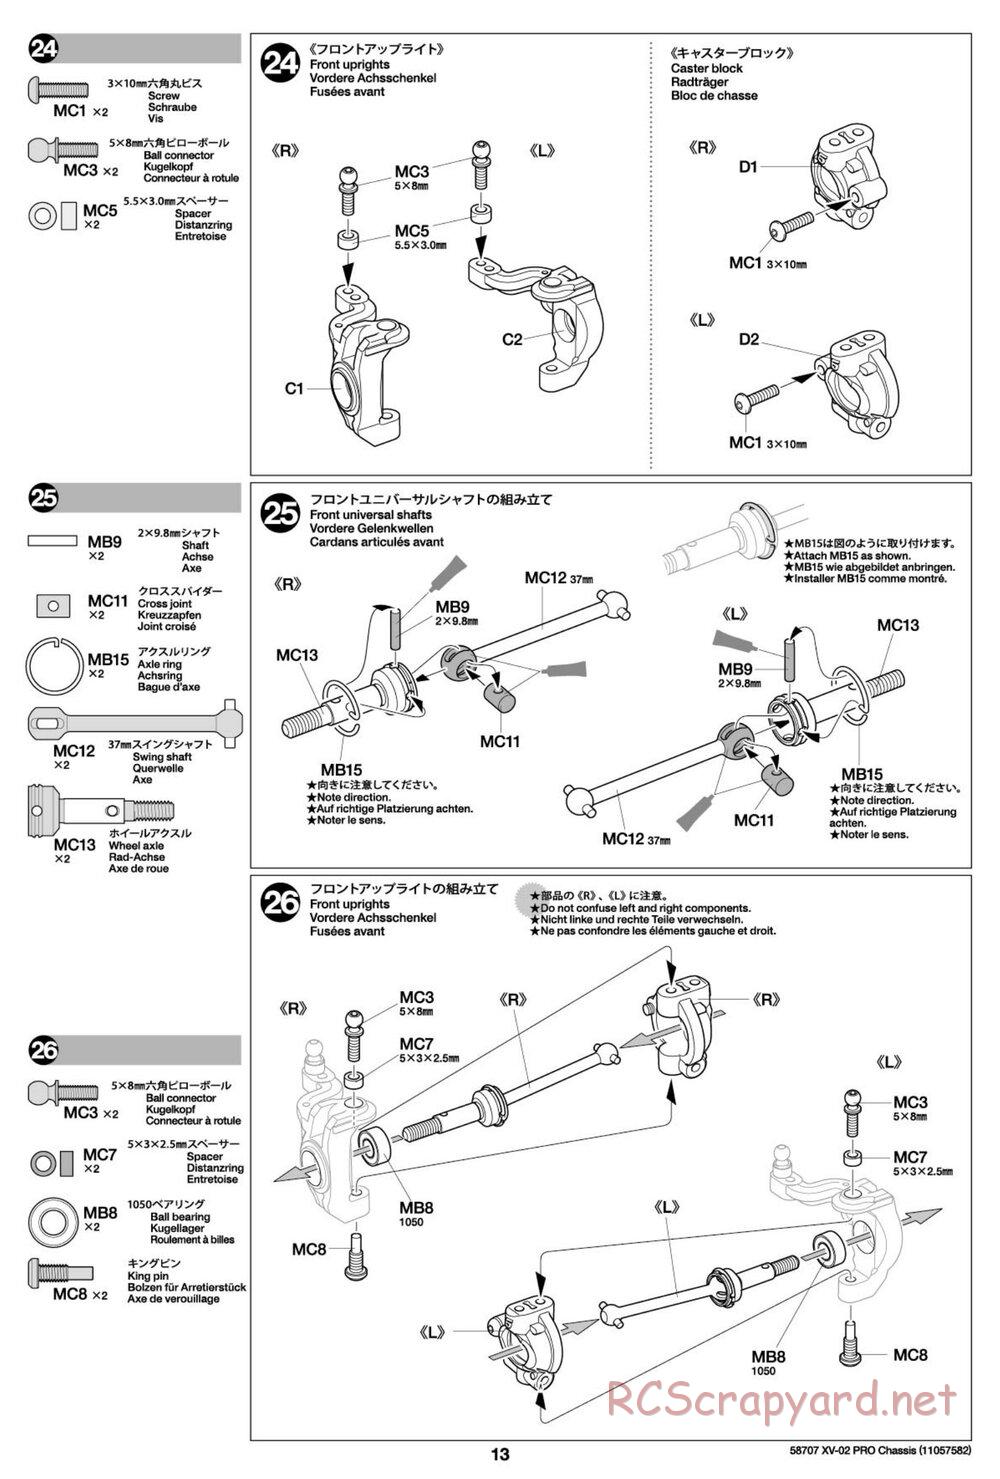 Tamiya - XV-02 Pro Chassis - Manual - Page 13